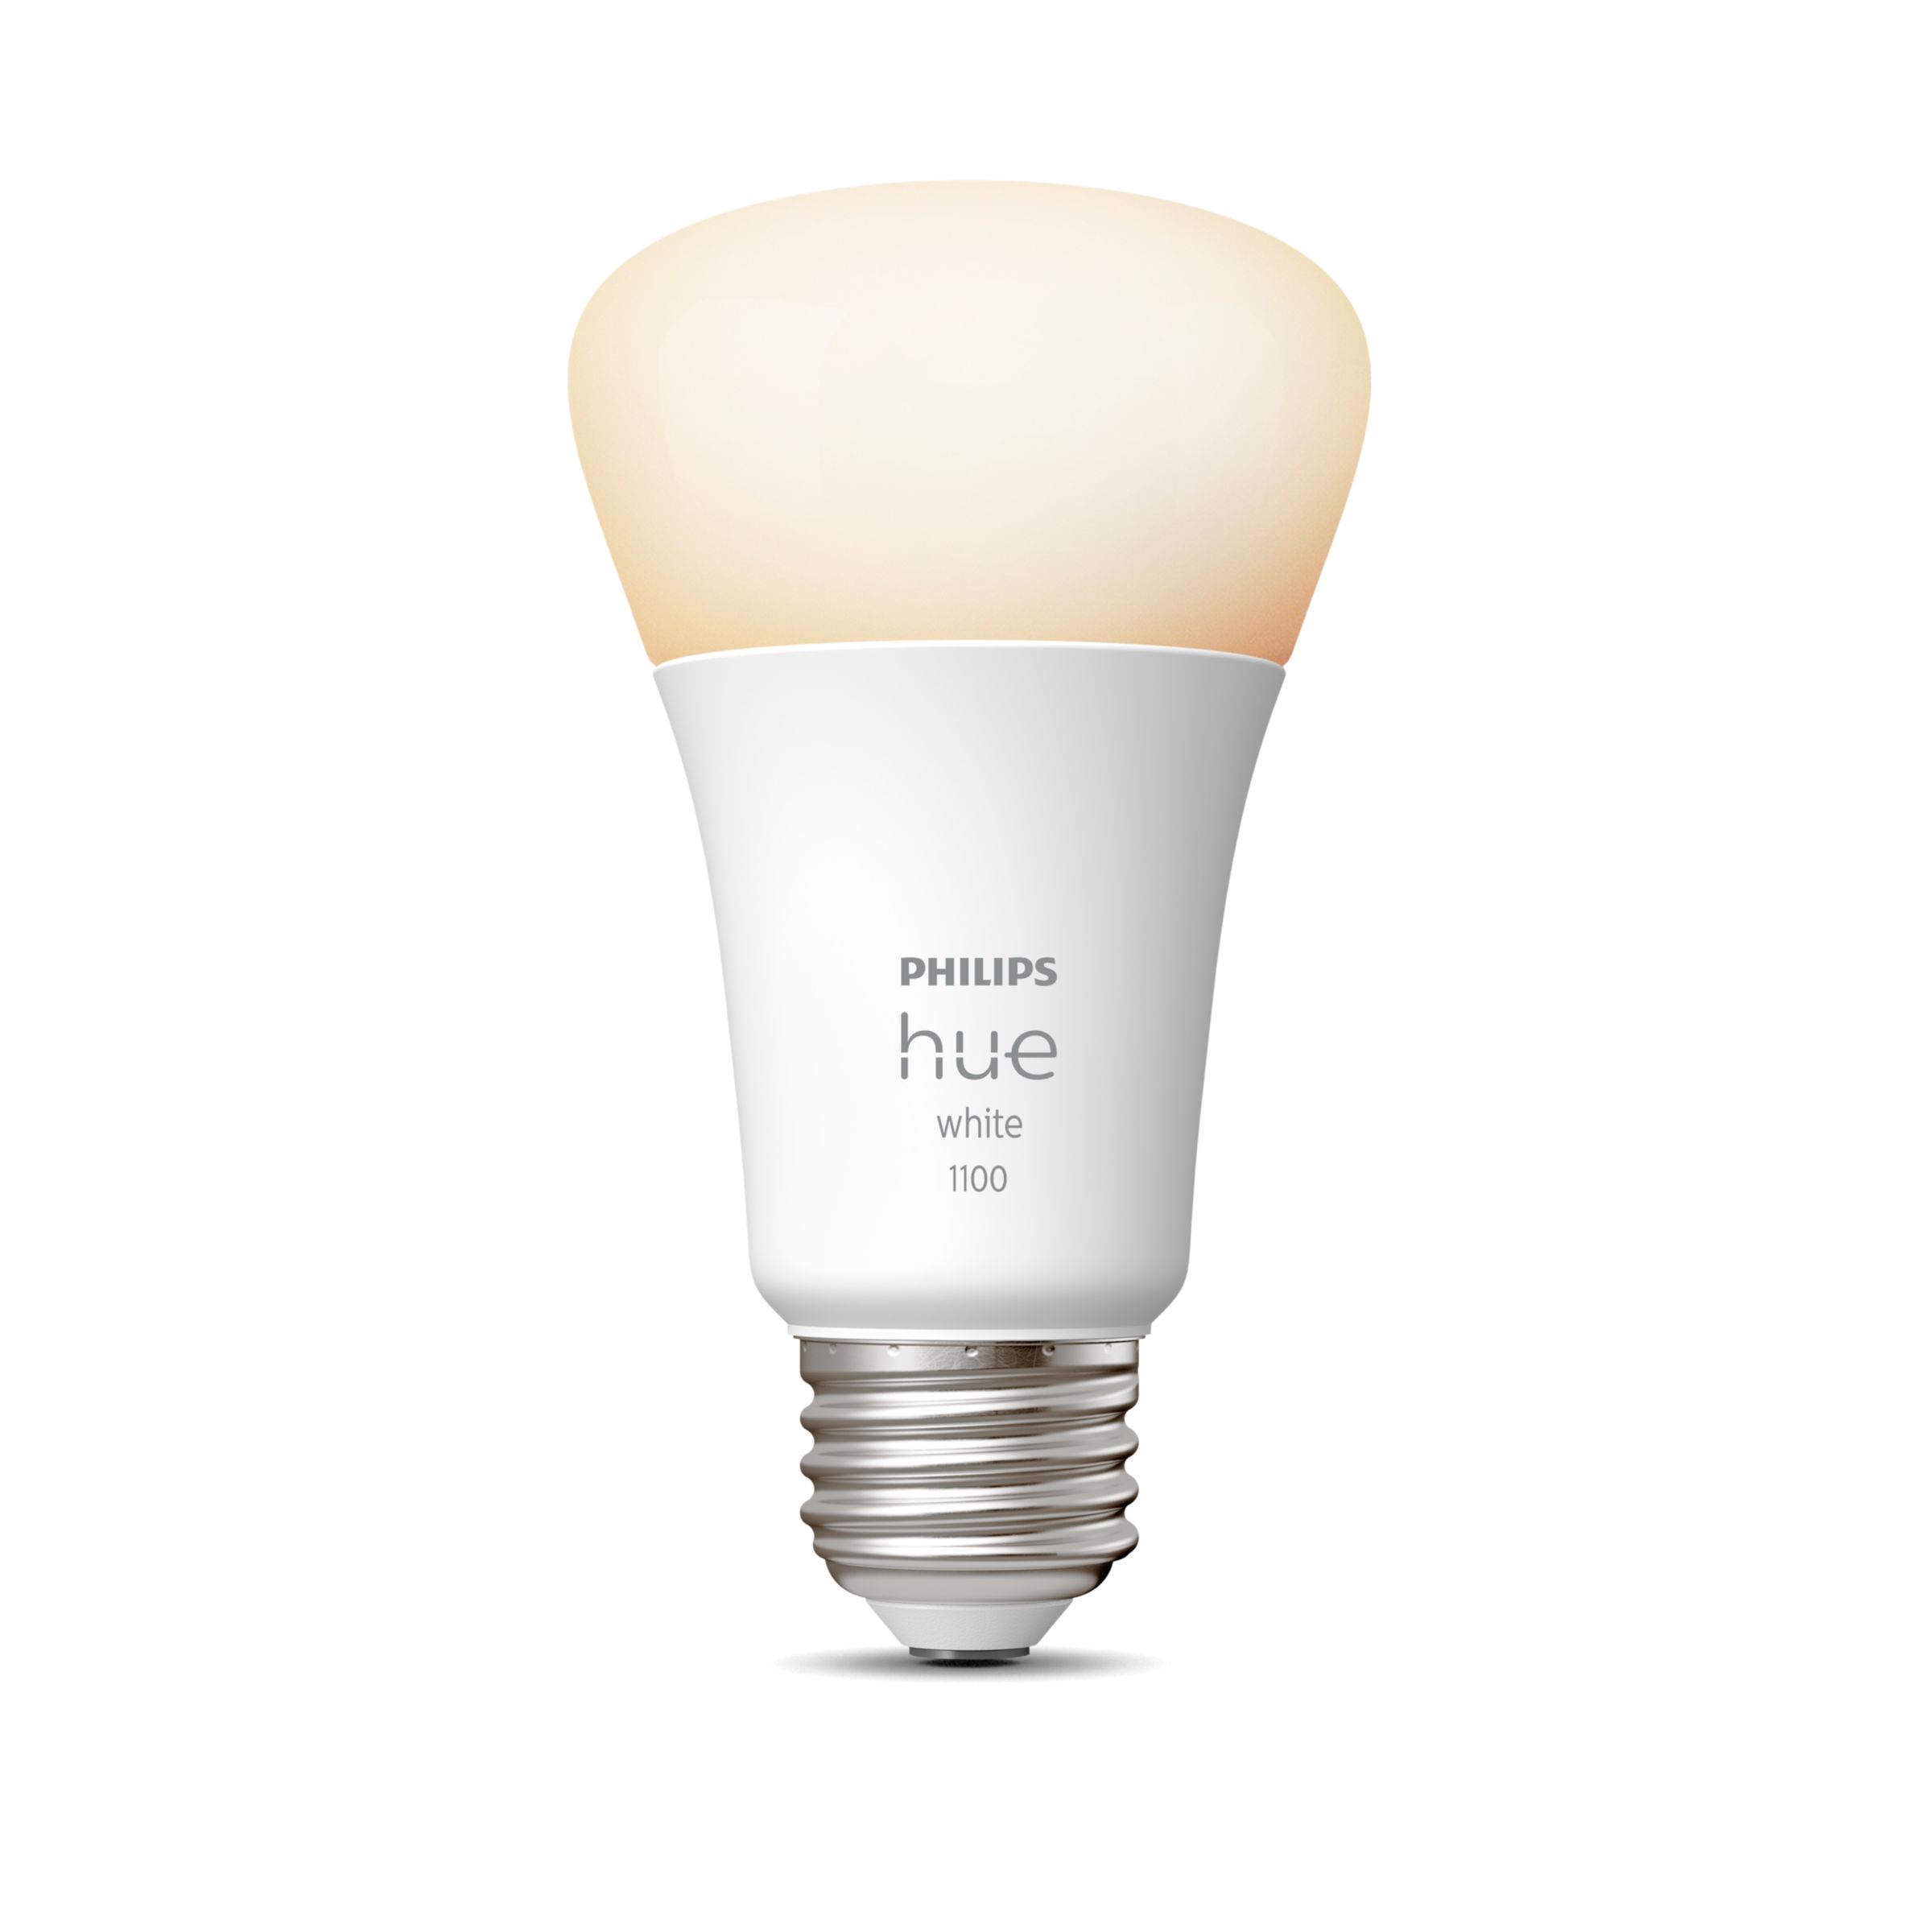 Hue 2-pack A19 E26 75W LED Bulbs - White | Philips Hue US